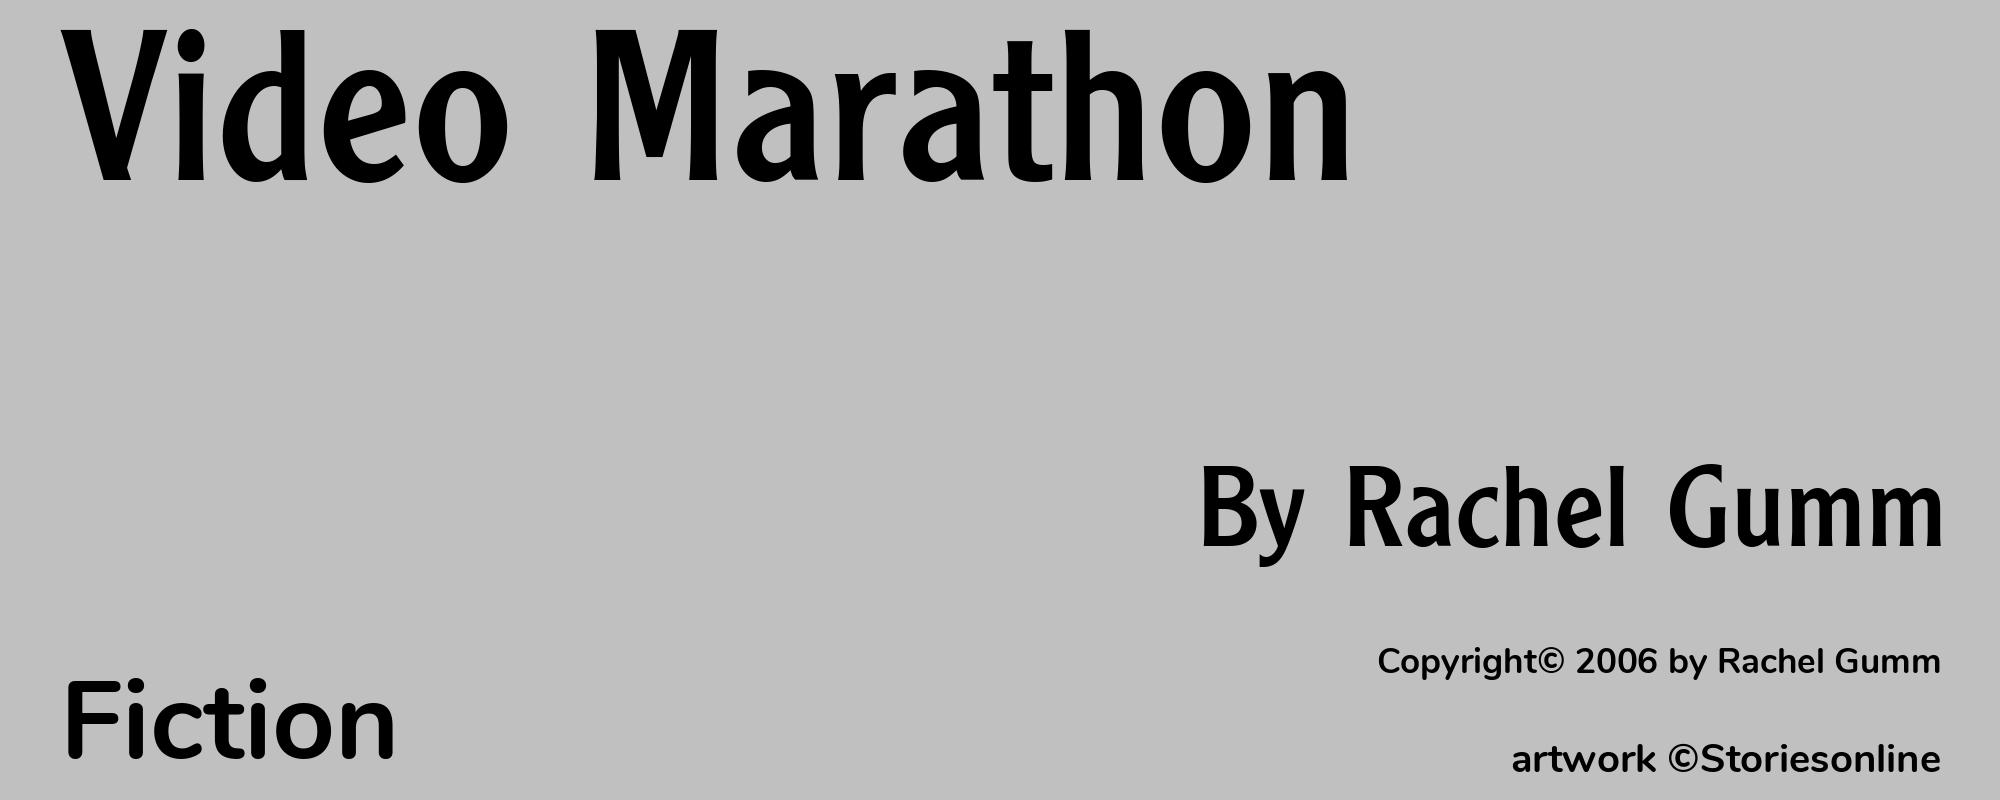 Video Marathon - Cover